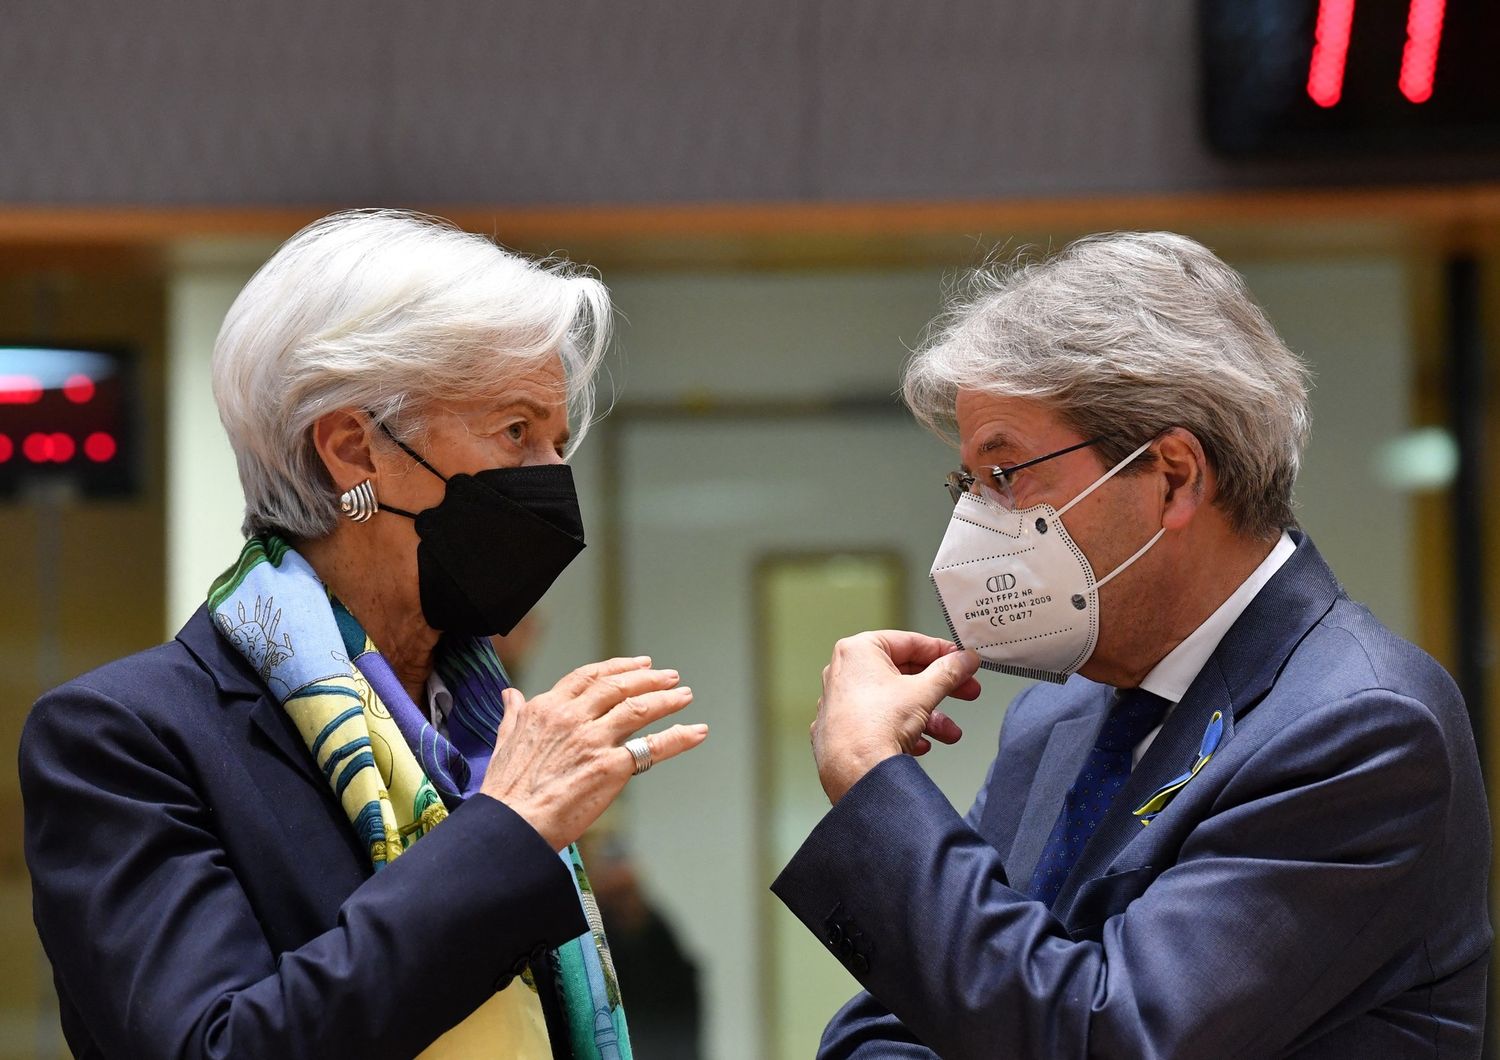 La presidente della Bce Christine Lagarde President e il Commissario europeo per l'Economia, Paolo Gentiloni&nbsp;